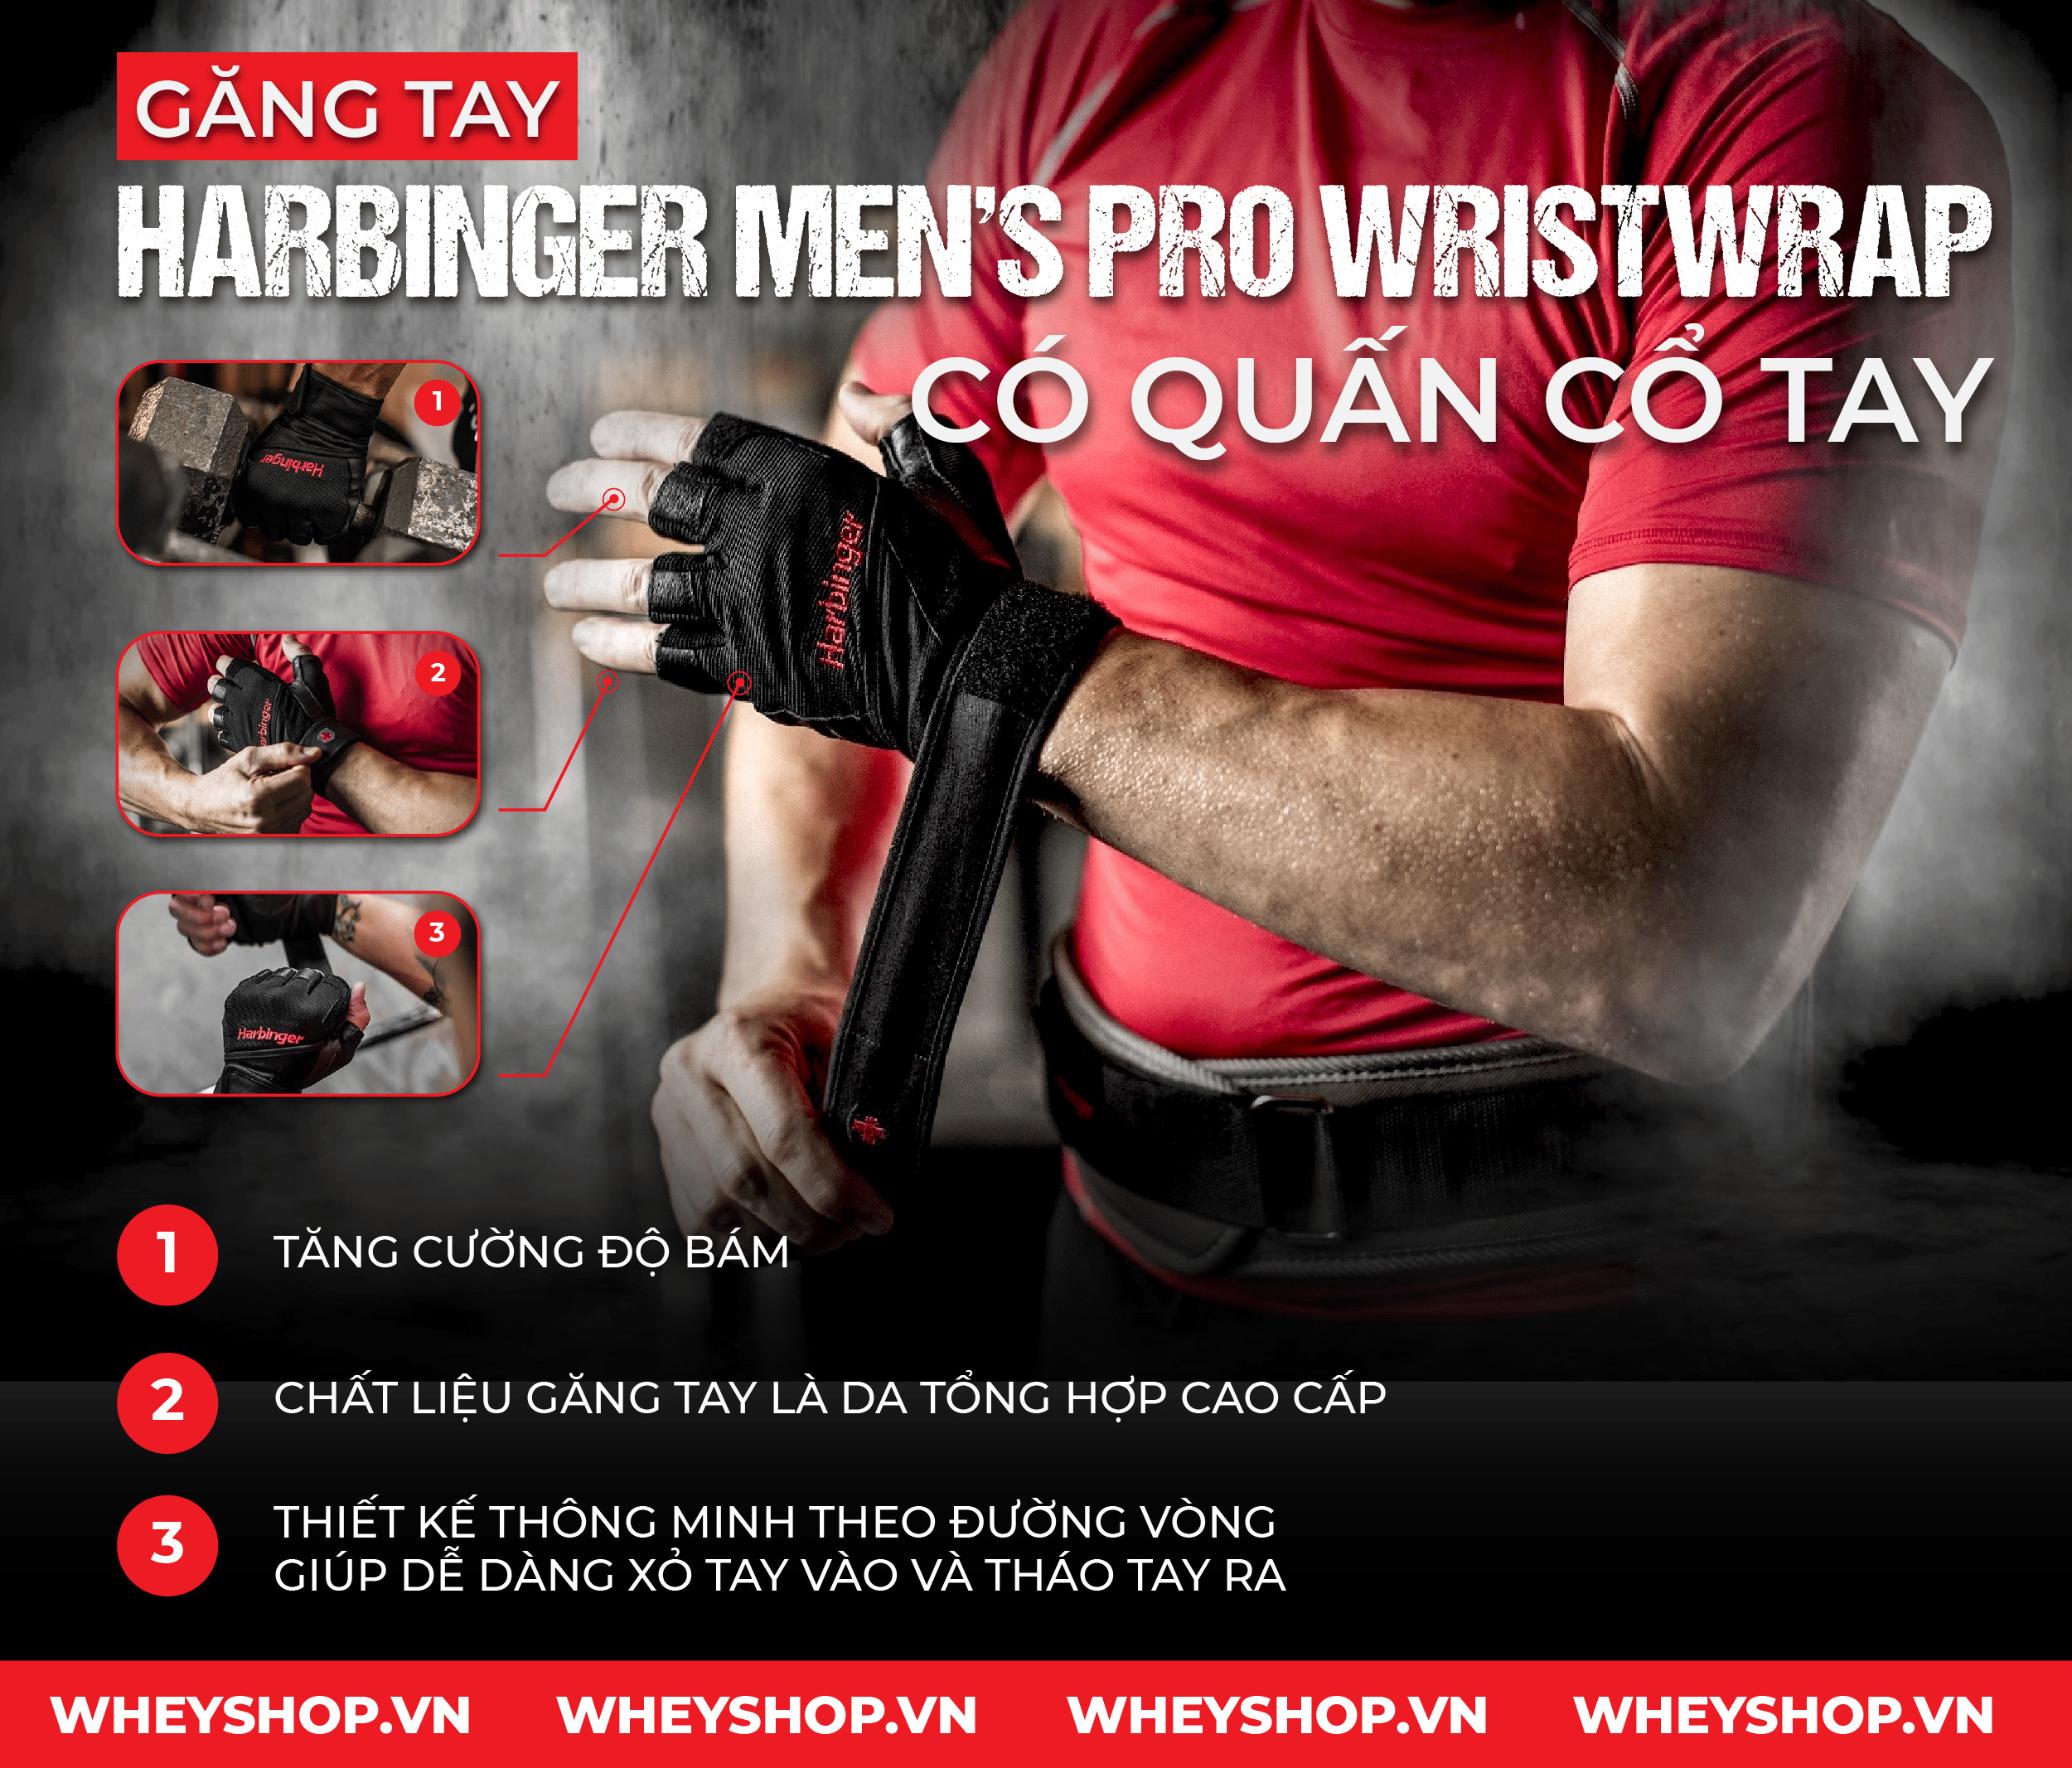 Găng Tay Harbinger Men’s Pro Wristwrap Có Quấn Cổ Tay kết hợp 2 trong 1 hỗ trợ tập luyện hiệu quả. Sản phẩm nhập khẩu chính hãng, cam kết giá rẻ tốt nhất Hà Nội TpHCM...